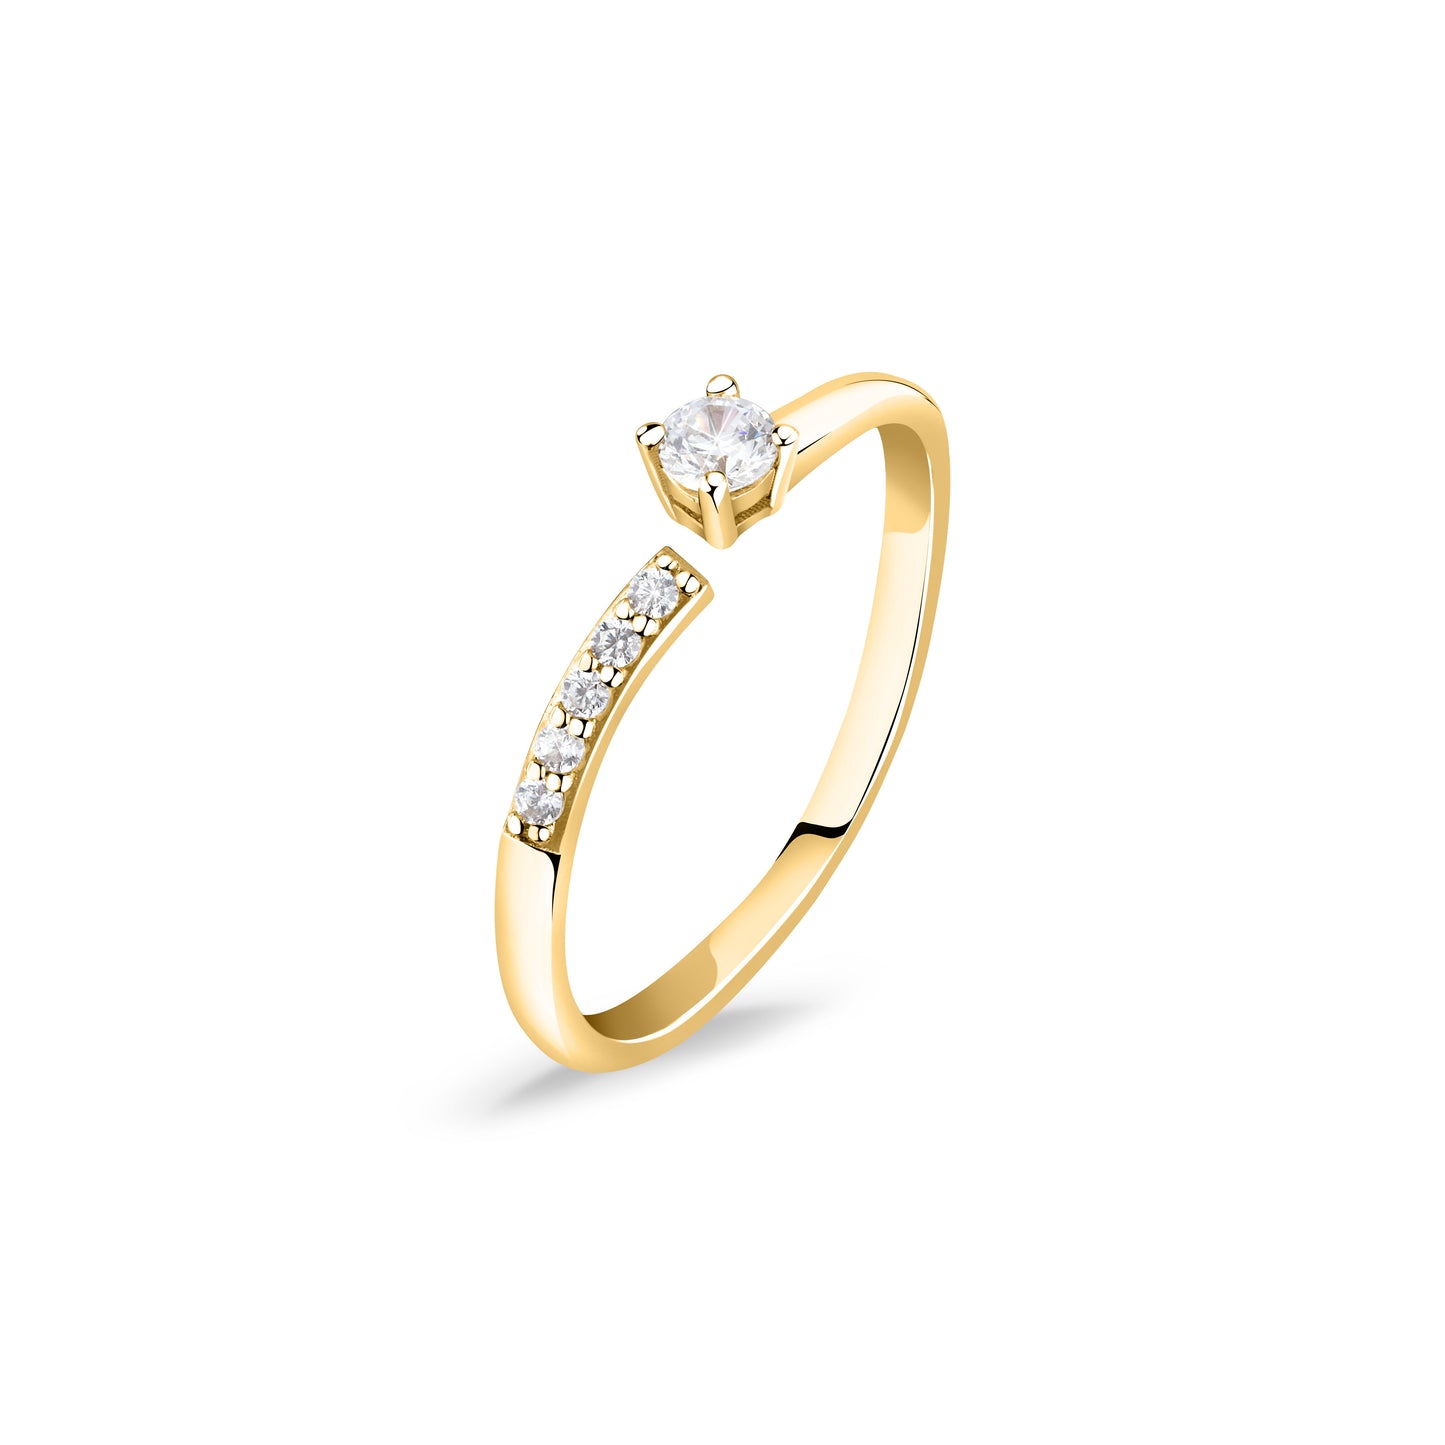 RING WOMAN LIVE DIAMOND CONTEMPORARY DIAMOND LDY015113010